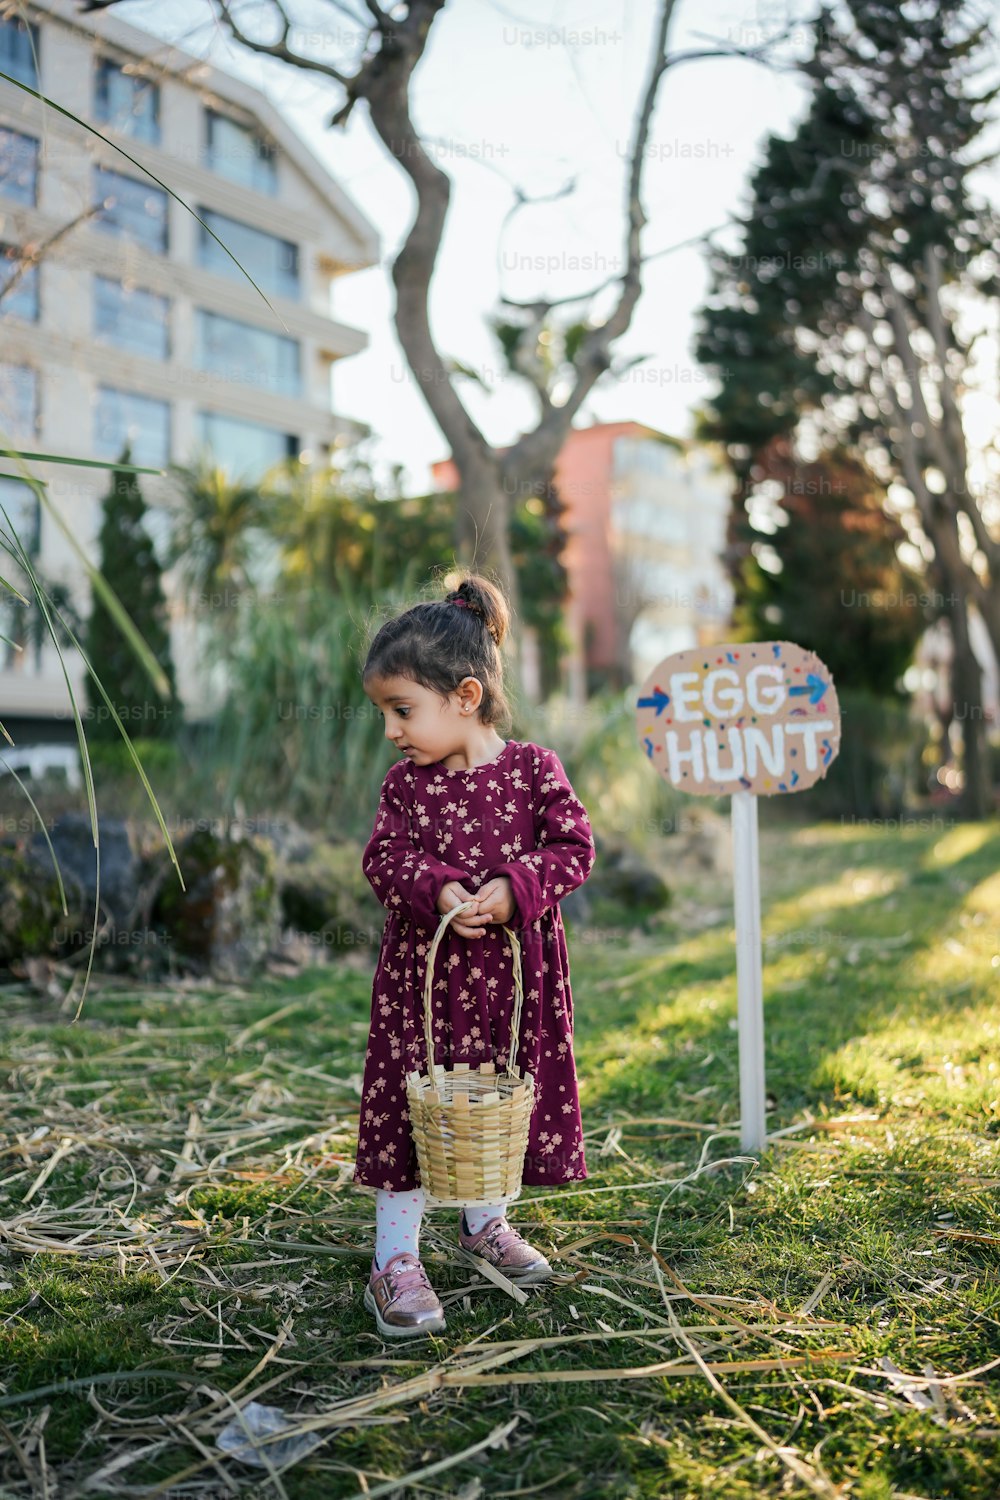 Ein kleines Mädchen hält einen Korb neben einem Schild